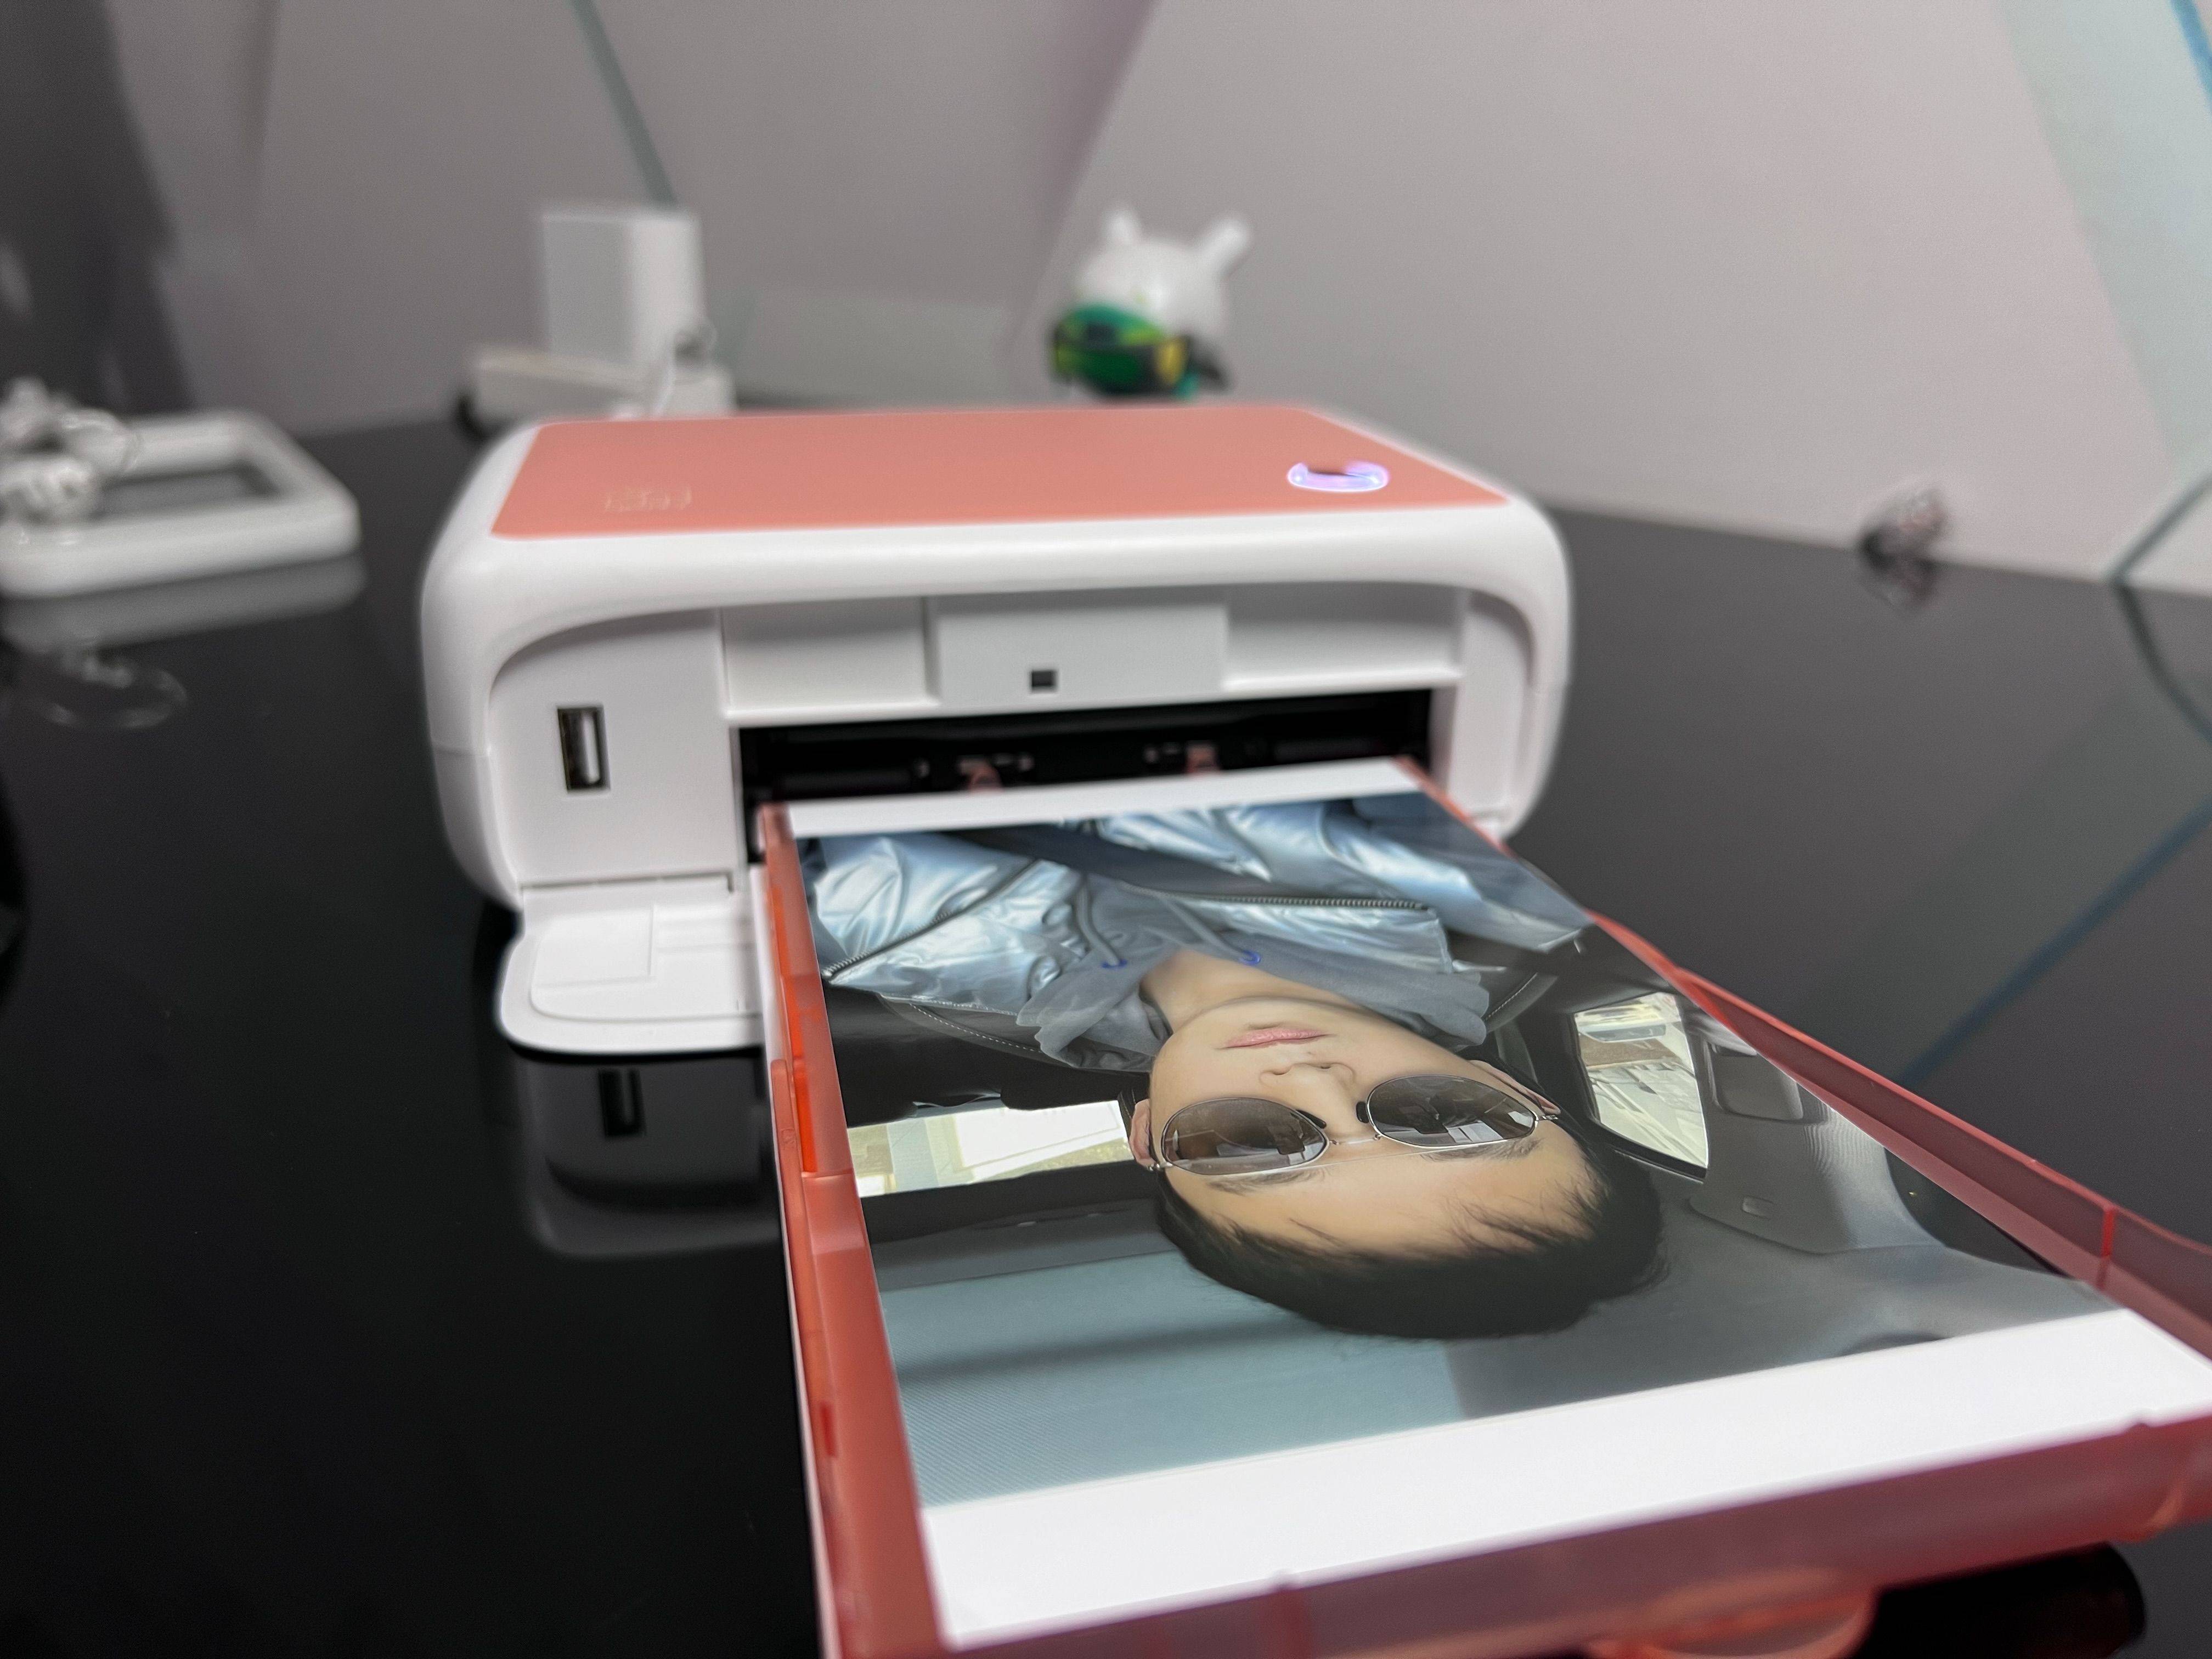 打印机我选了汉印，小巧玲珑的机身居然能印出如此清晰炫酷的照片，CP4000L